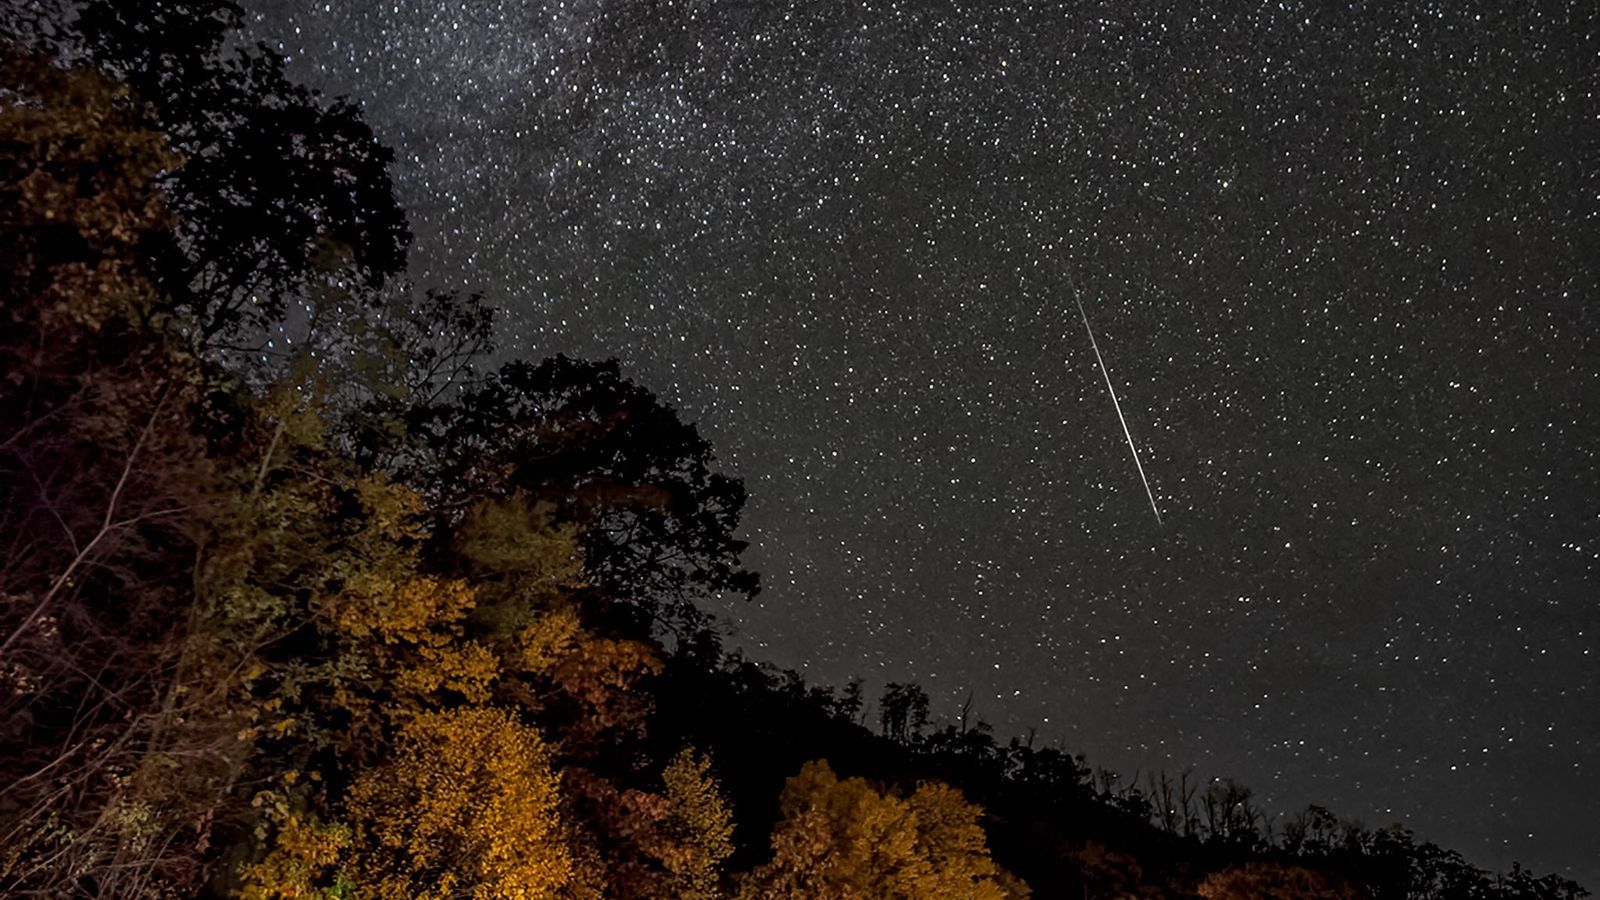 Chuva de meteoros Oriônidas - O que é, quando ocorre e características